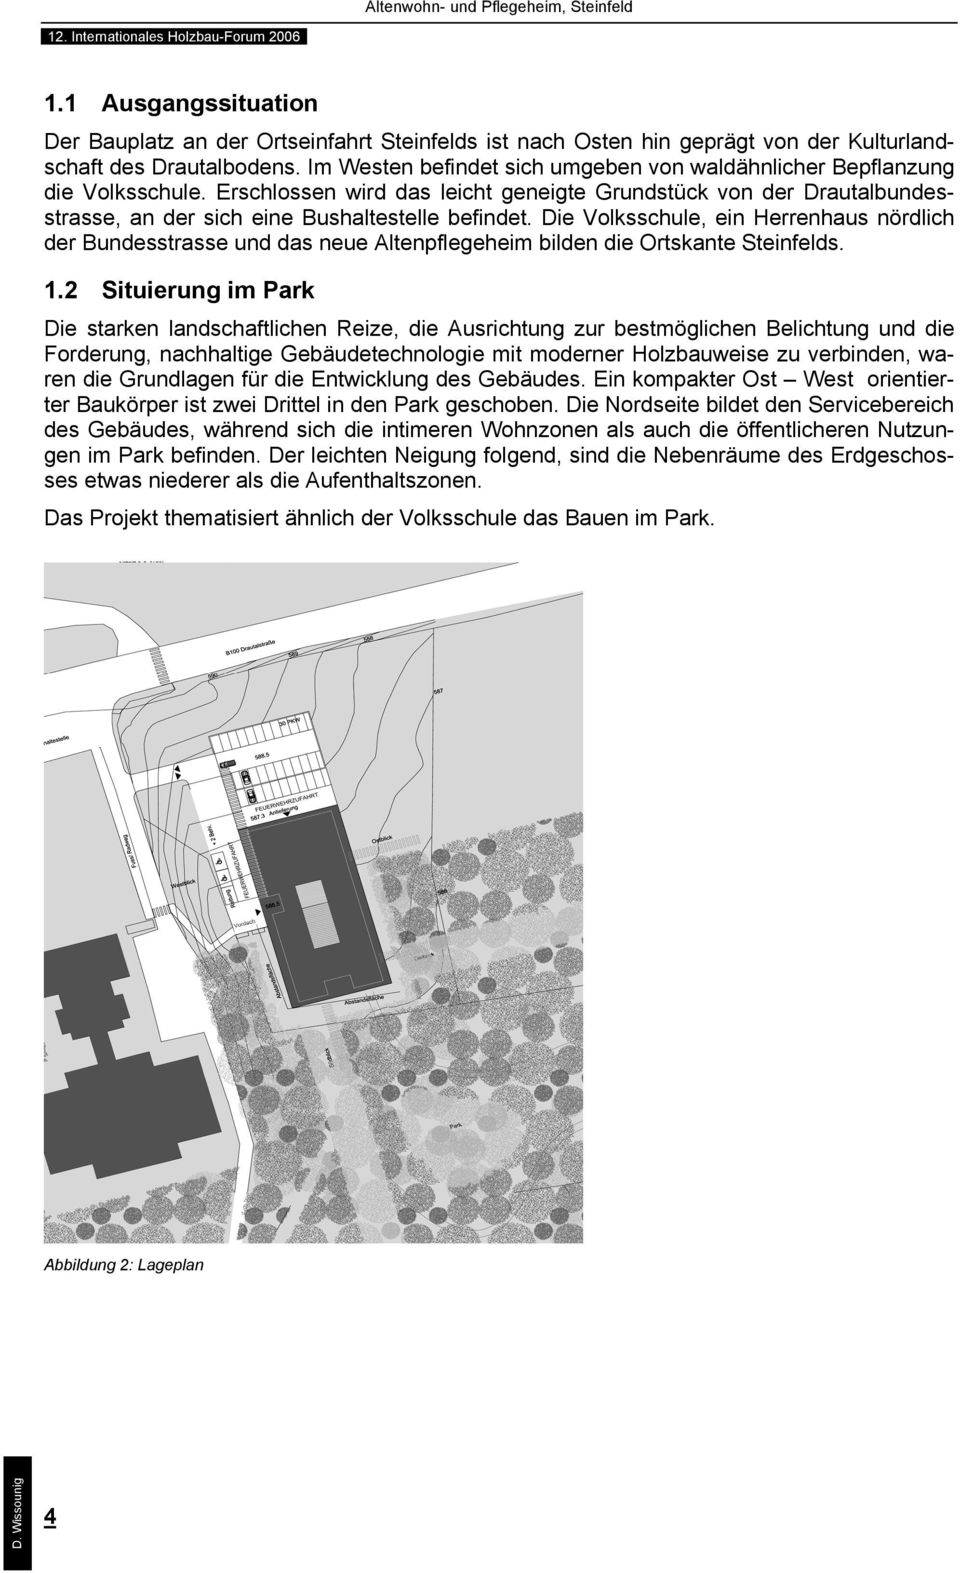 Die Volksschule, ein Herrenhaus nördlich der Bundesstrasse und das neue Altenpflegeheim bilden die Ortskante Steinfelds. 1.